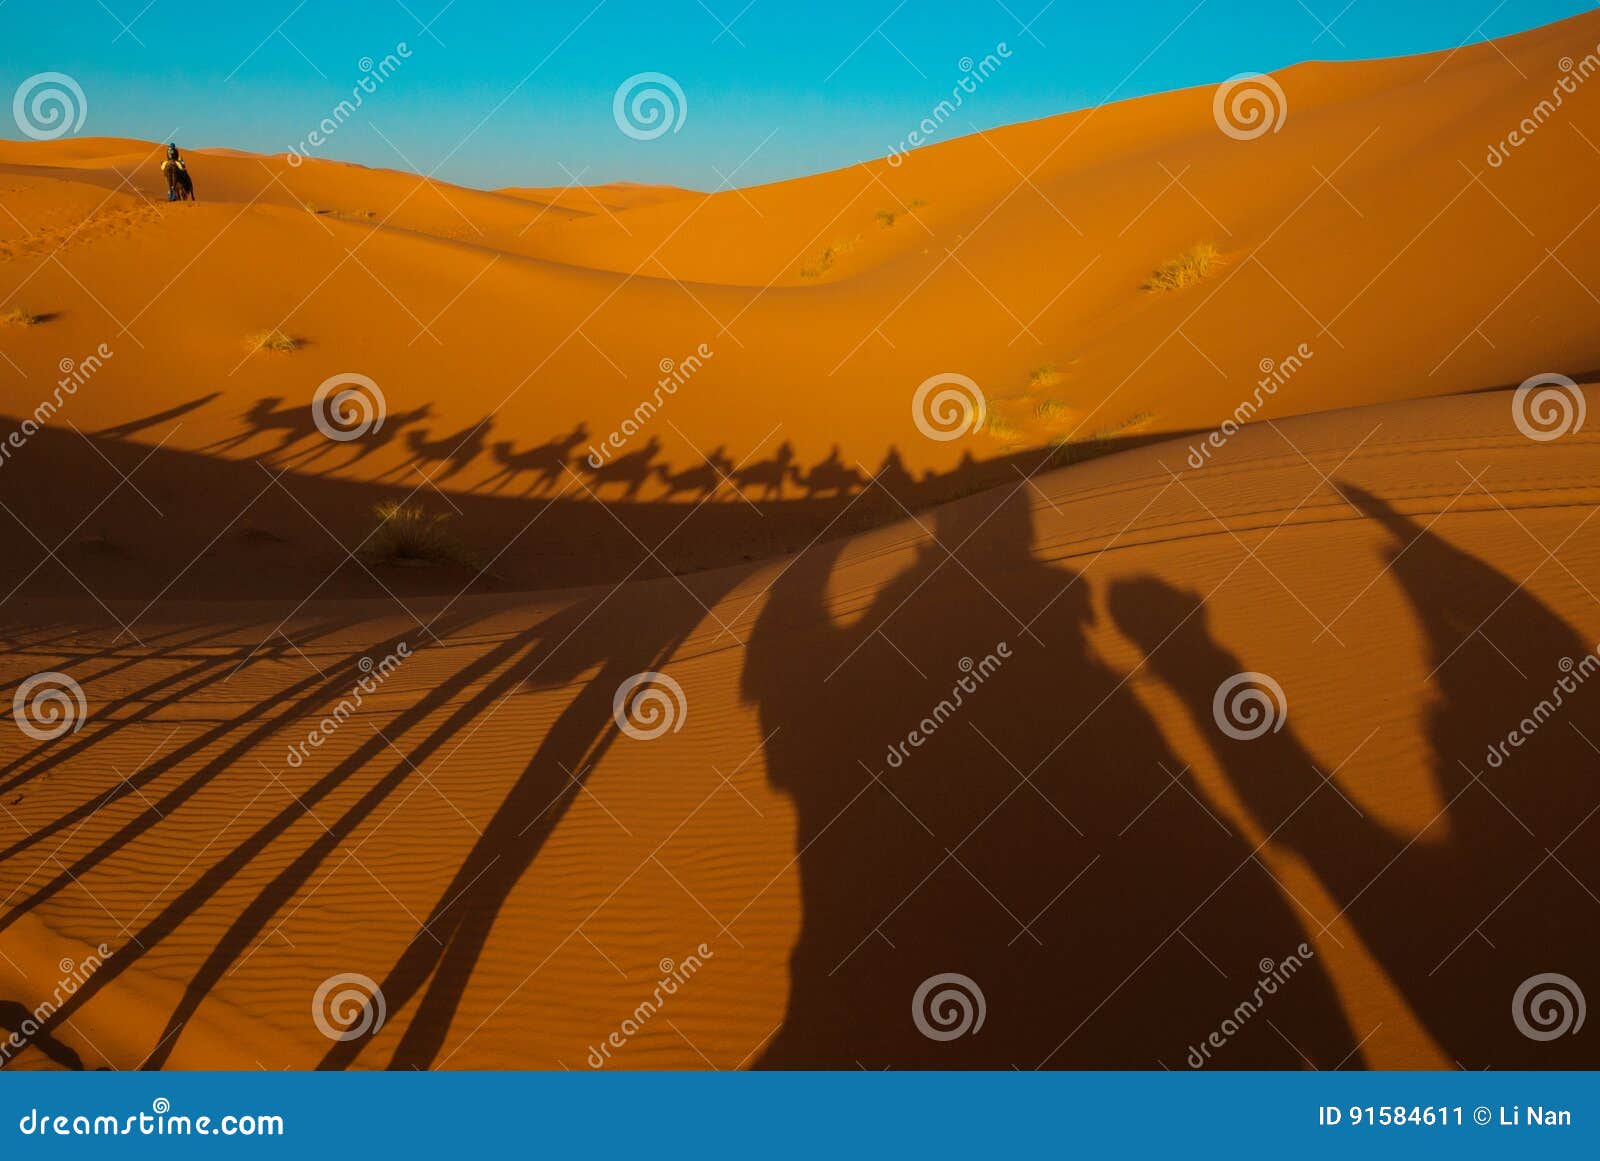 sunset in sahara desert